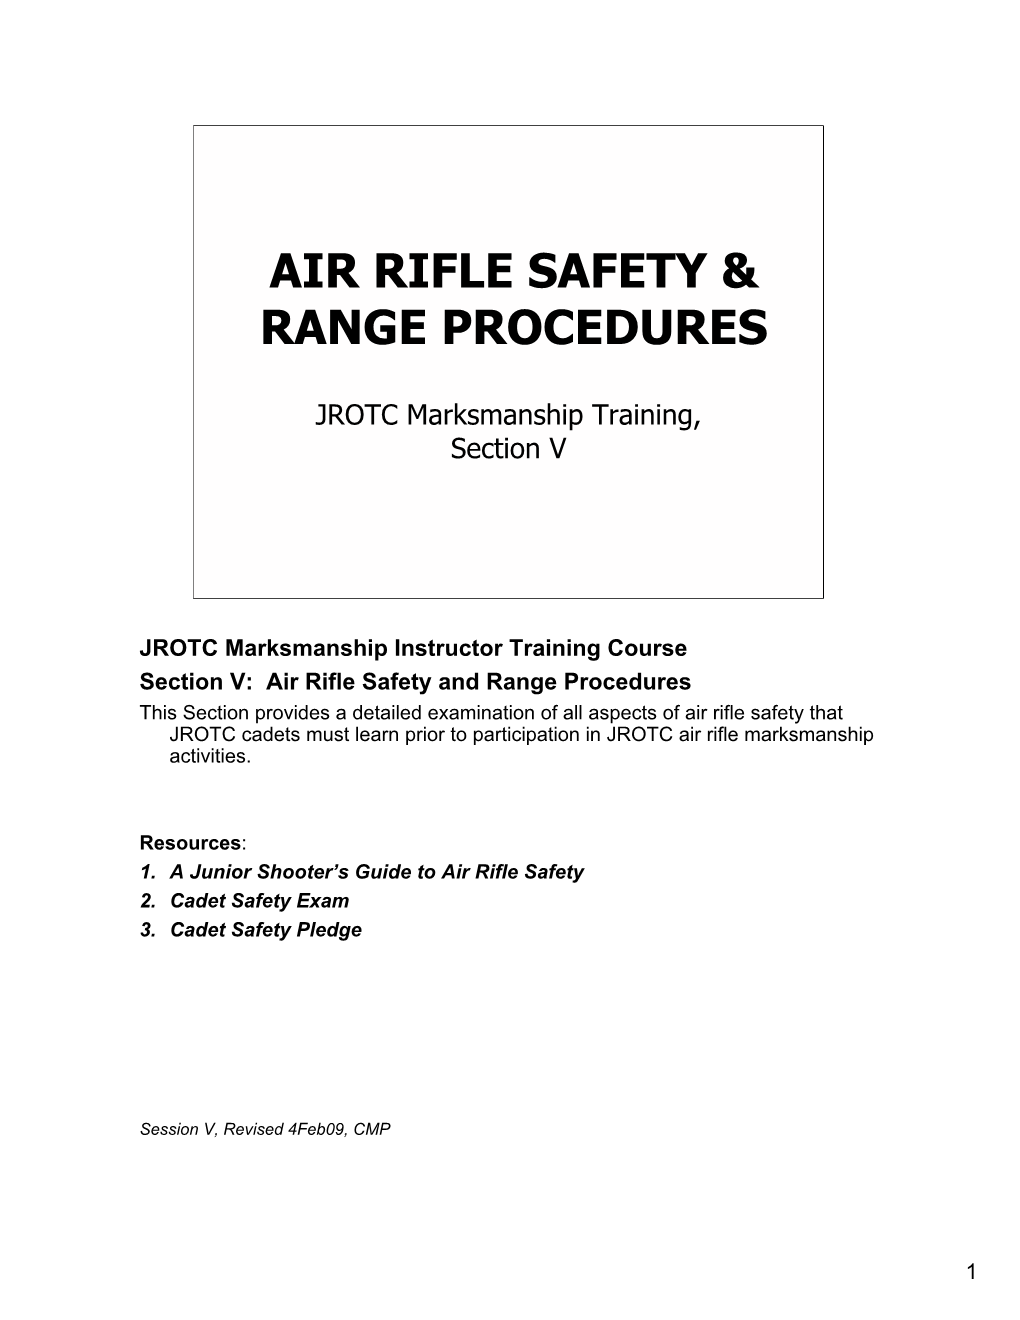 Air Rifle Safety & Range Procedures